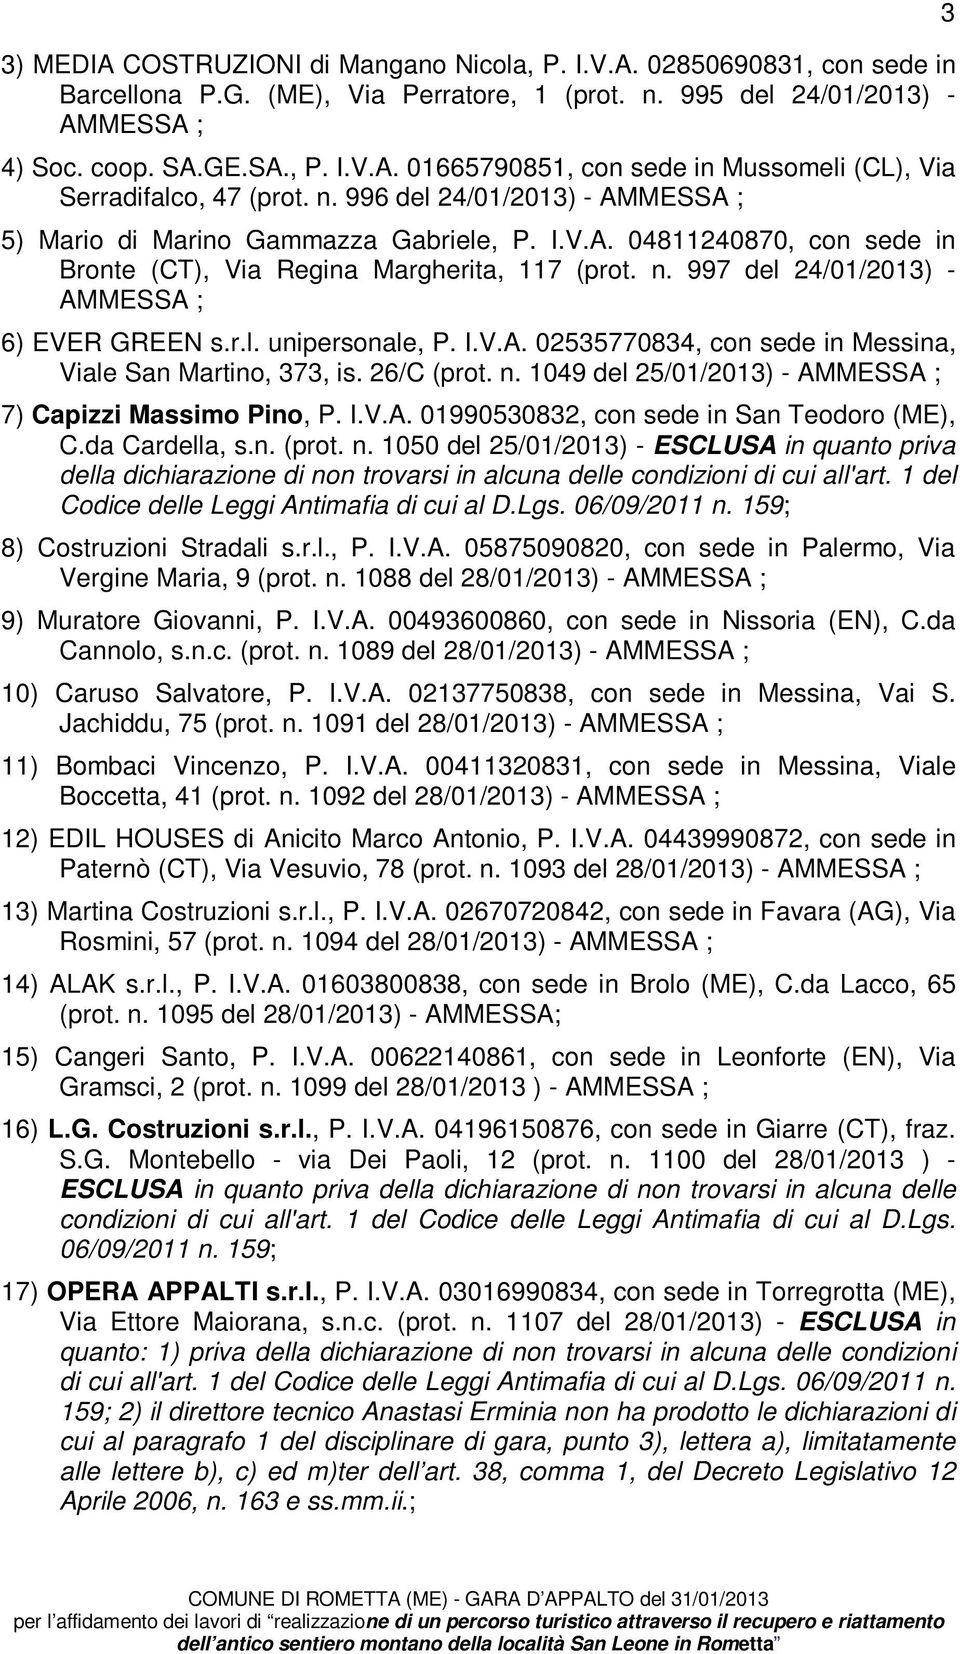 997 del 24/01/2013) - AMMESSA ; 6) EVER GREEN s.r.l. unipersonale, P. I.V.A. 02535770834, con sede in Messina, Viale San Martino, 373, is. 26/C (prot. n.